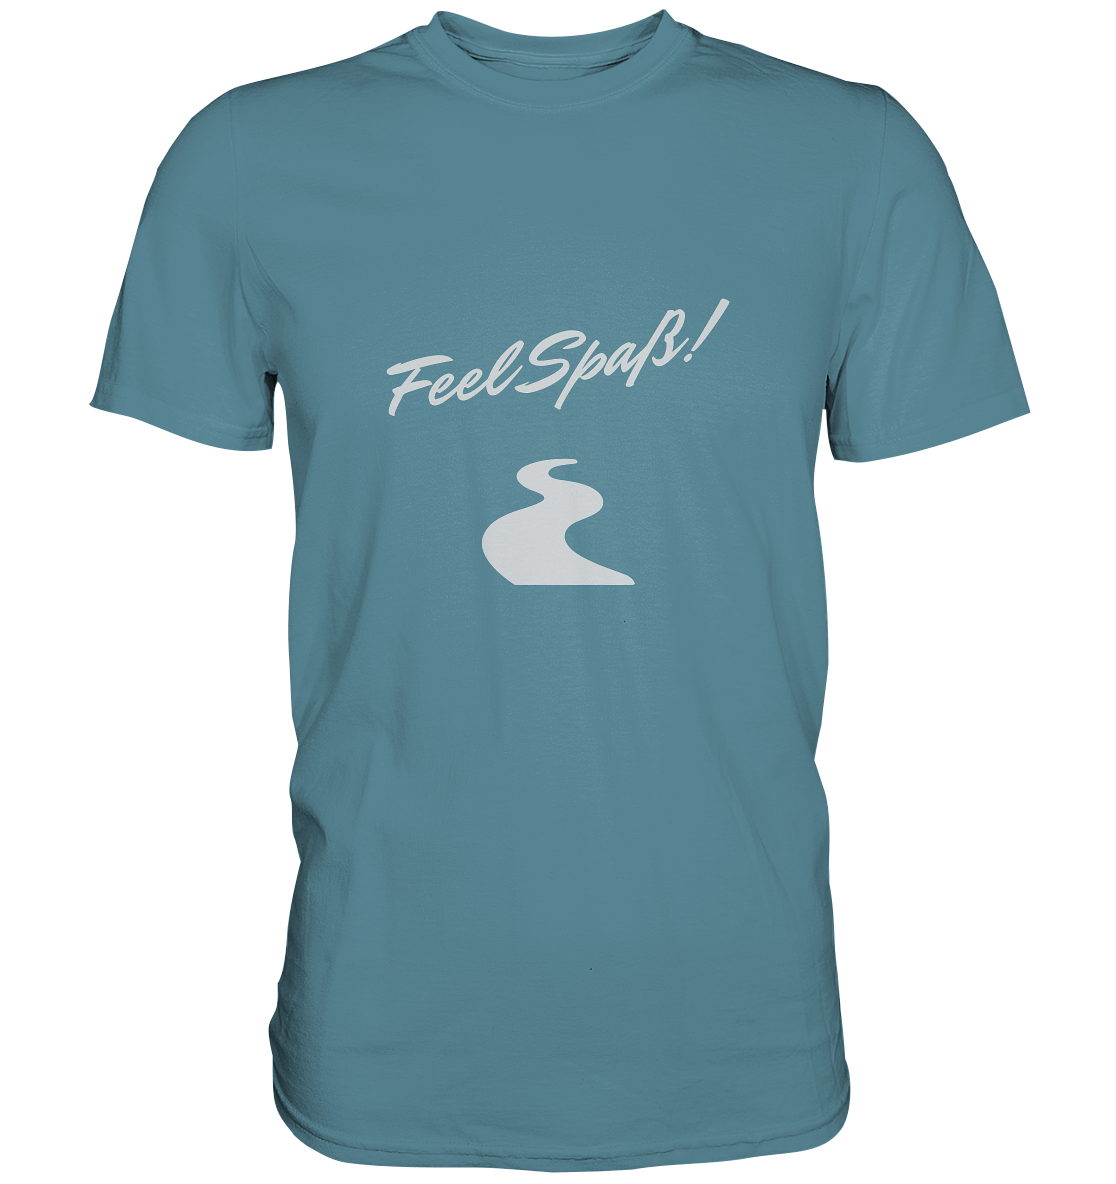 T-Shirt Herren, Rundhals, mit Aufdruck "Feel Spaß!" und kurviger Straße, hell blau